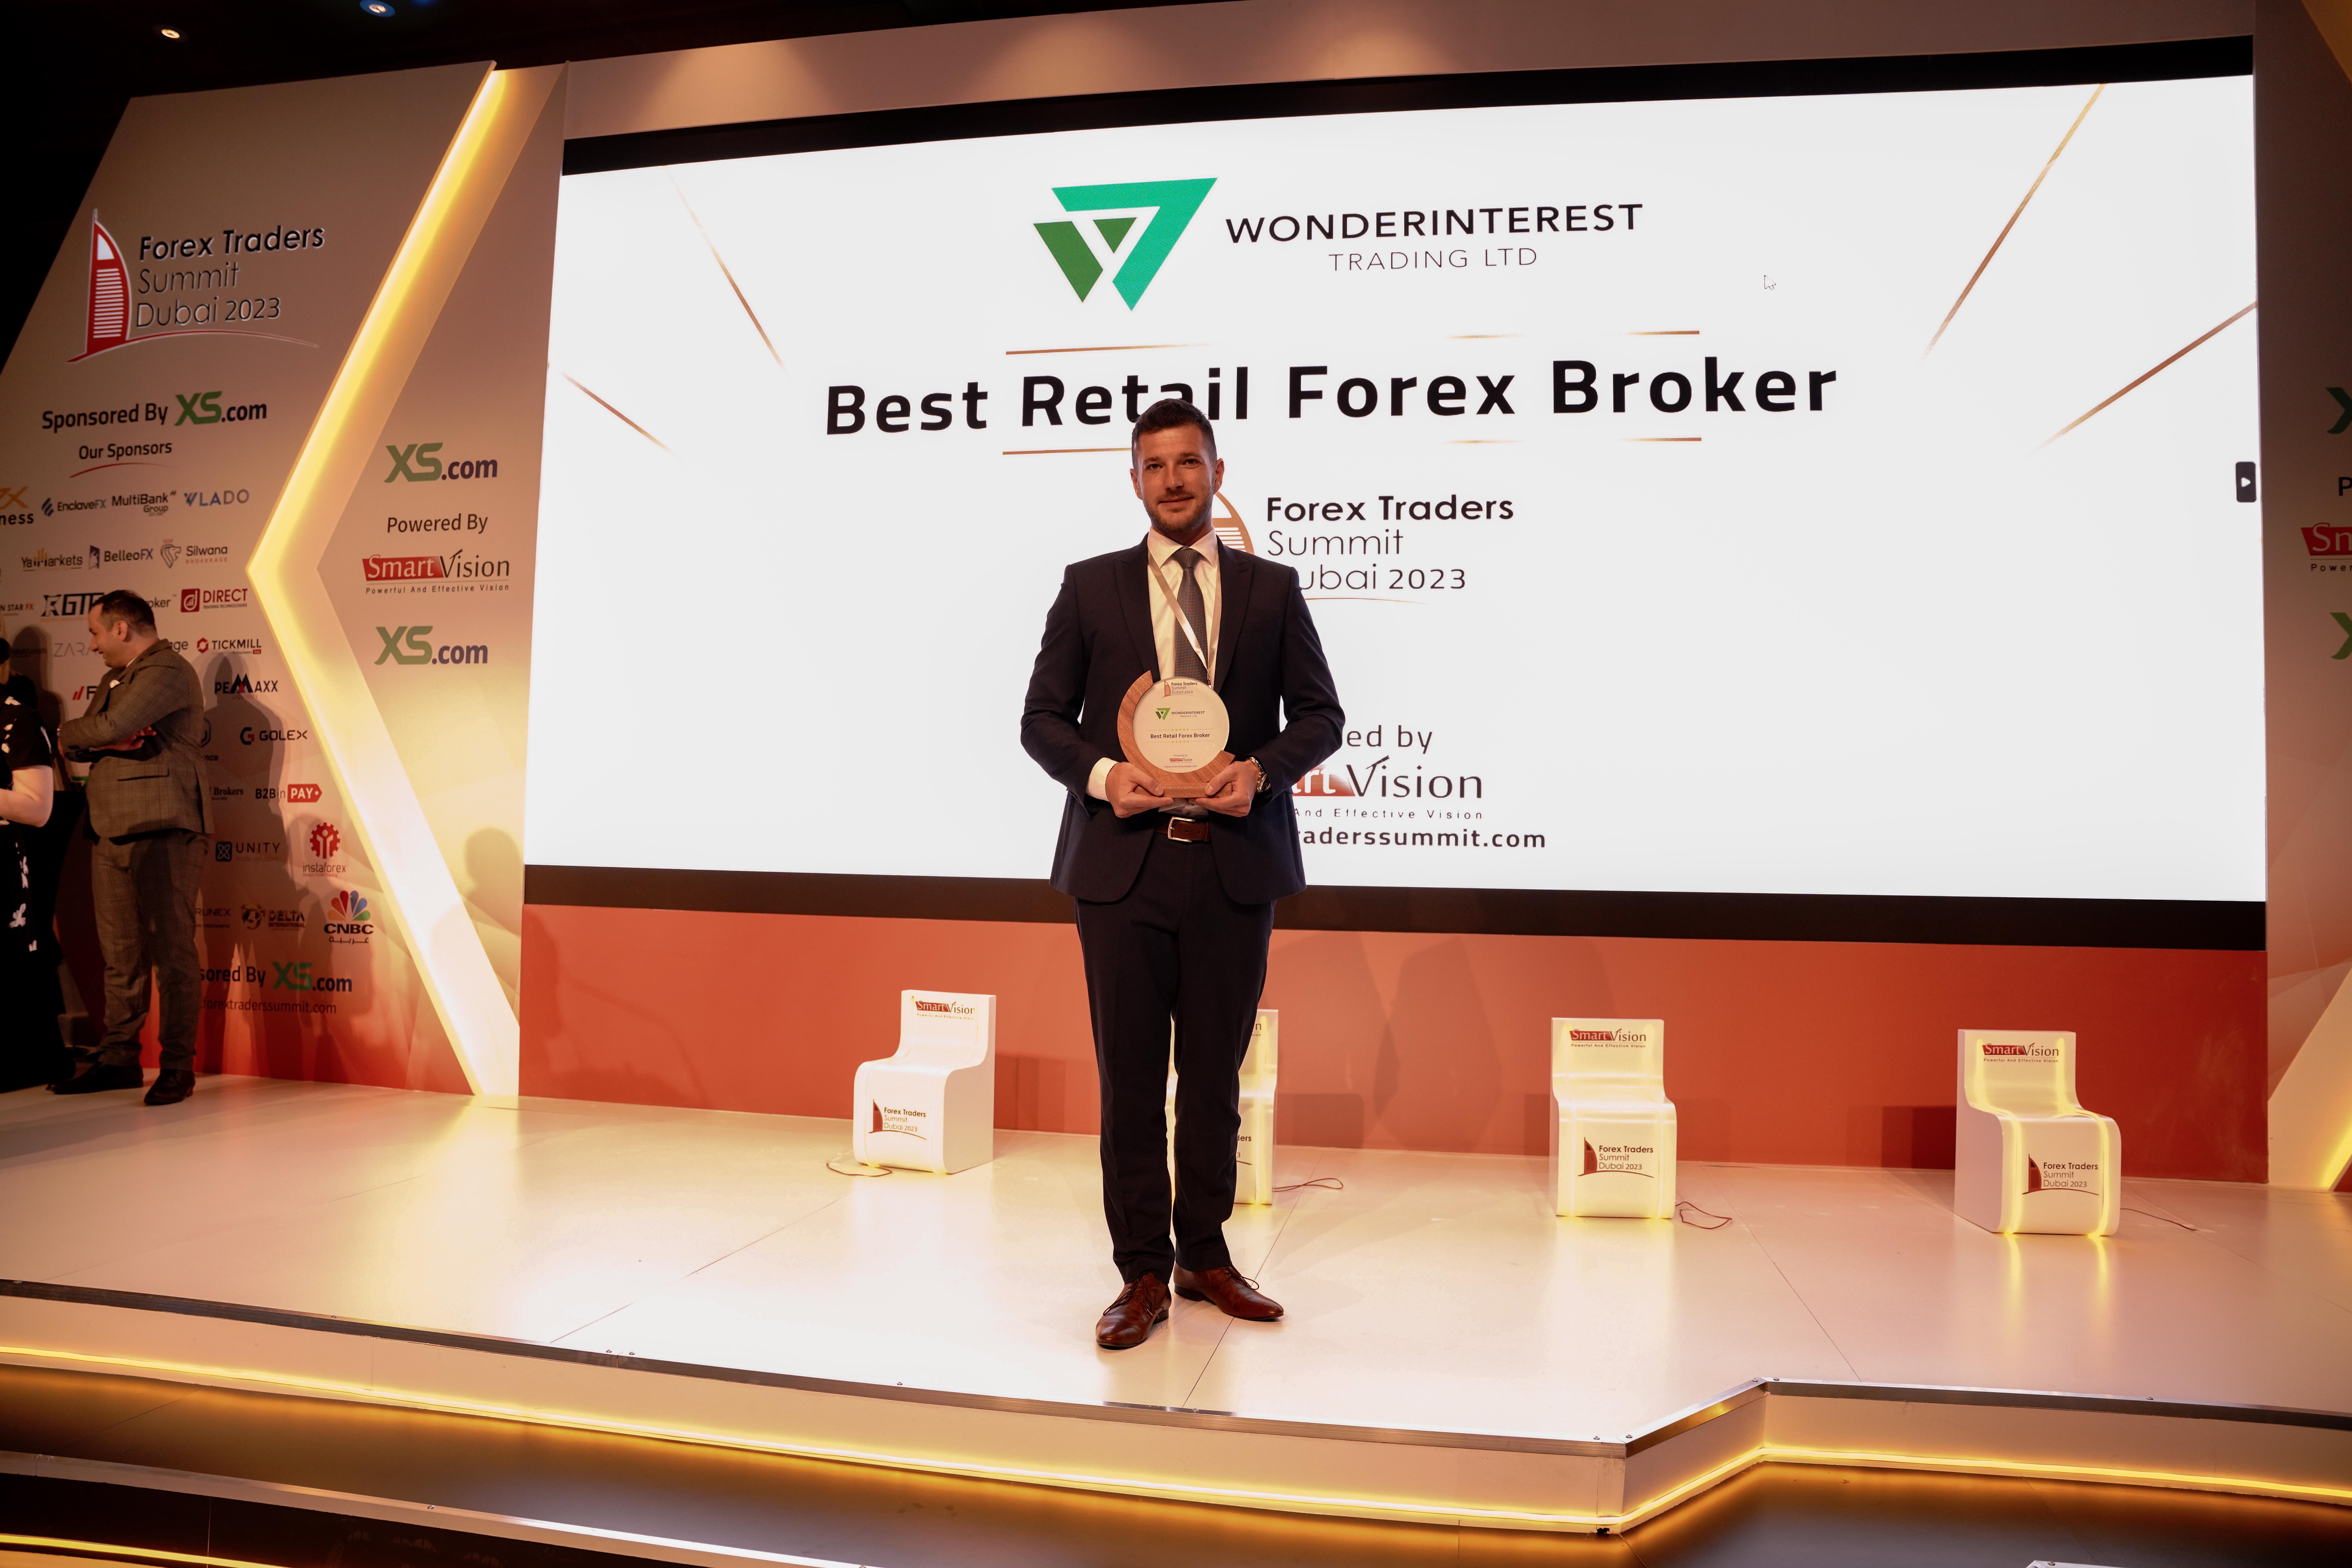 Wonderinterest | Společnost Wonderinterest Trading Ltd. vyhlášena jako The Best Retail Forex Broker. Ocenění získala na konferenci Forex Trader Summit 2023 v Dubaji